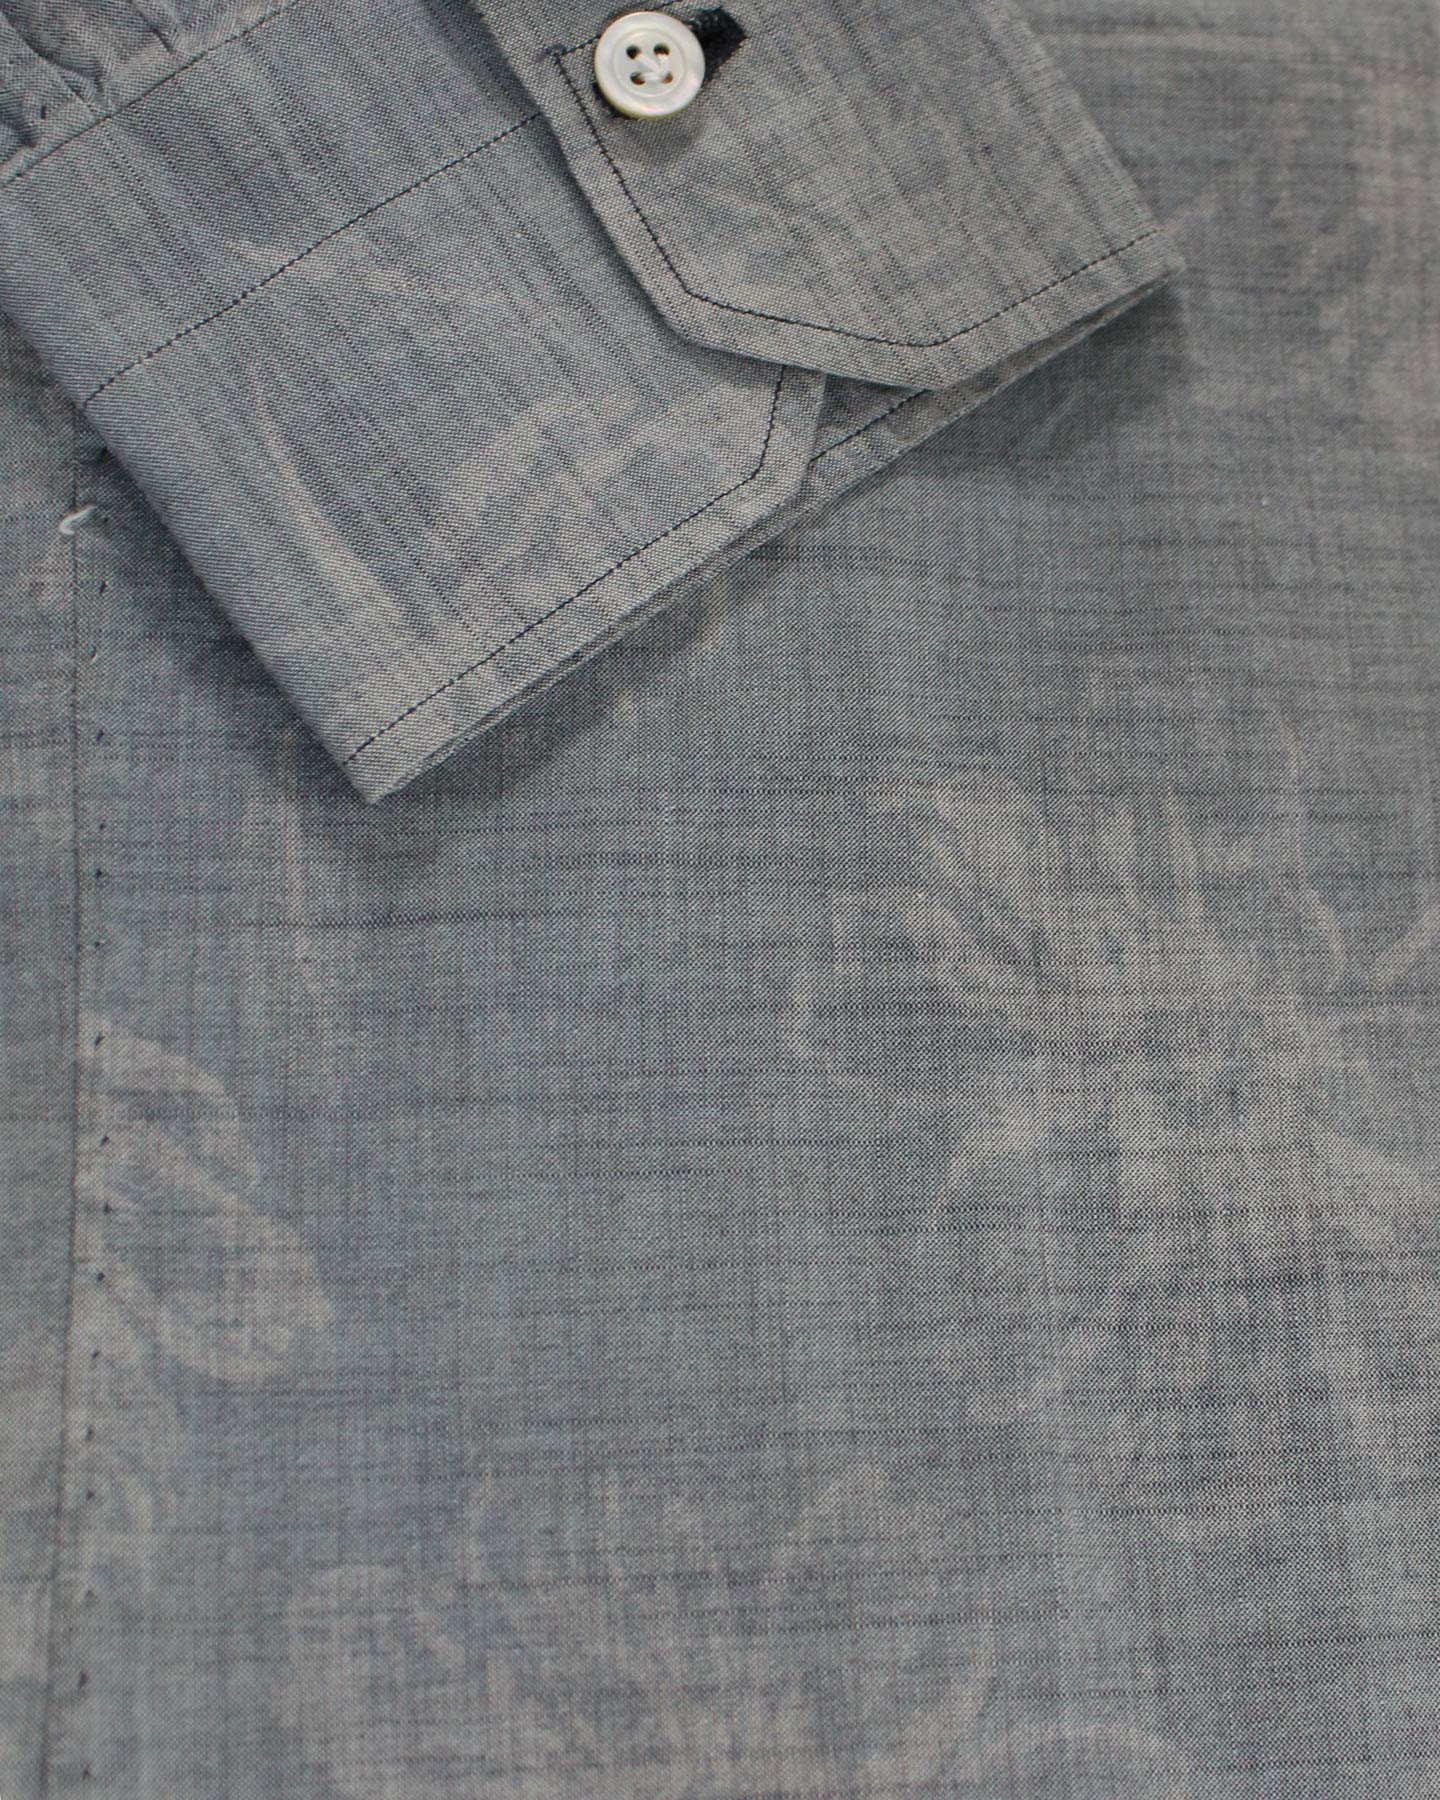 Kiton Sport Shirt Gray Floral  new